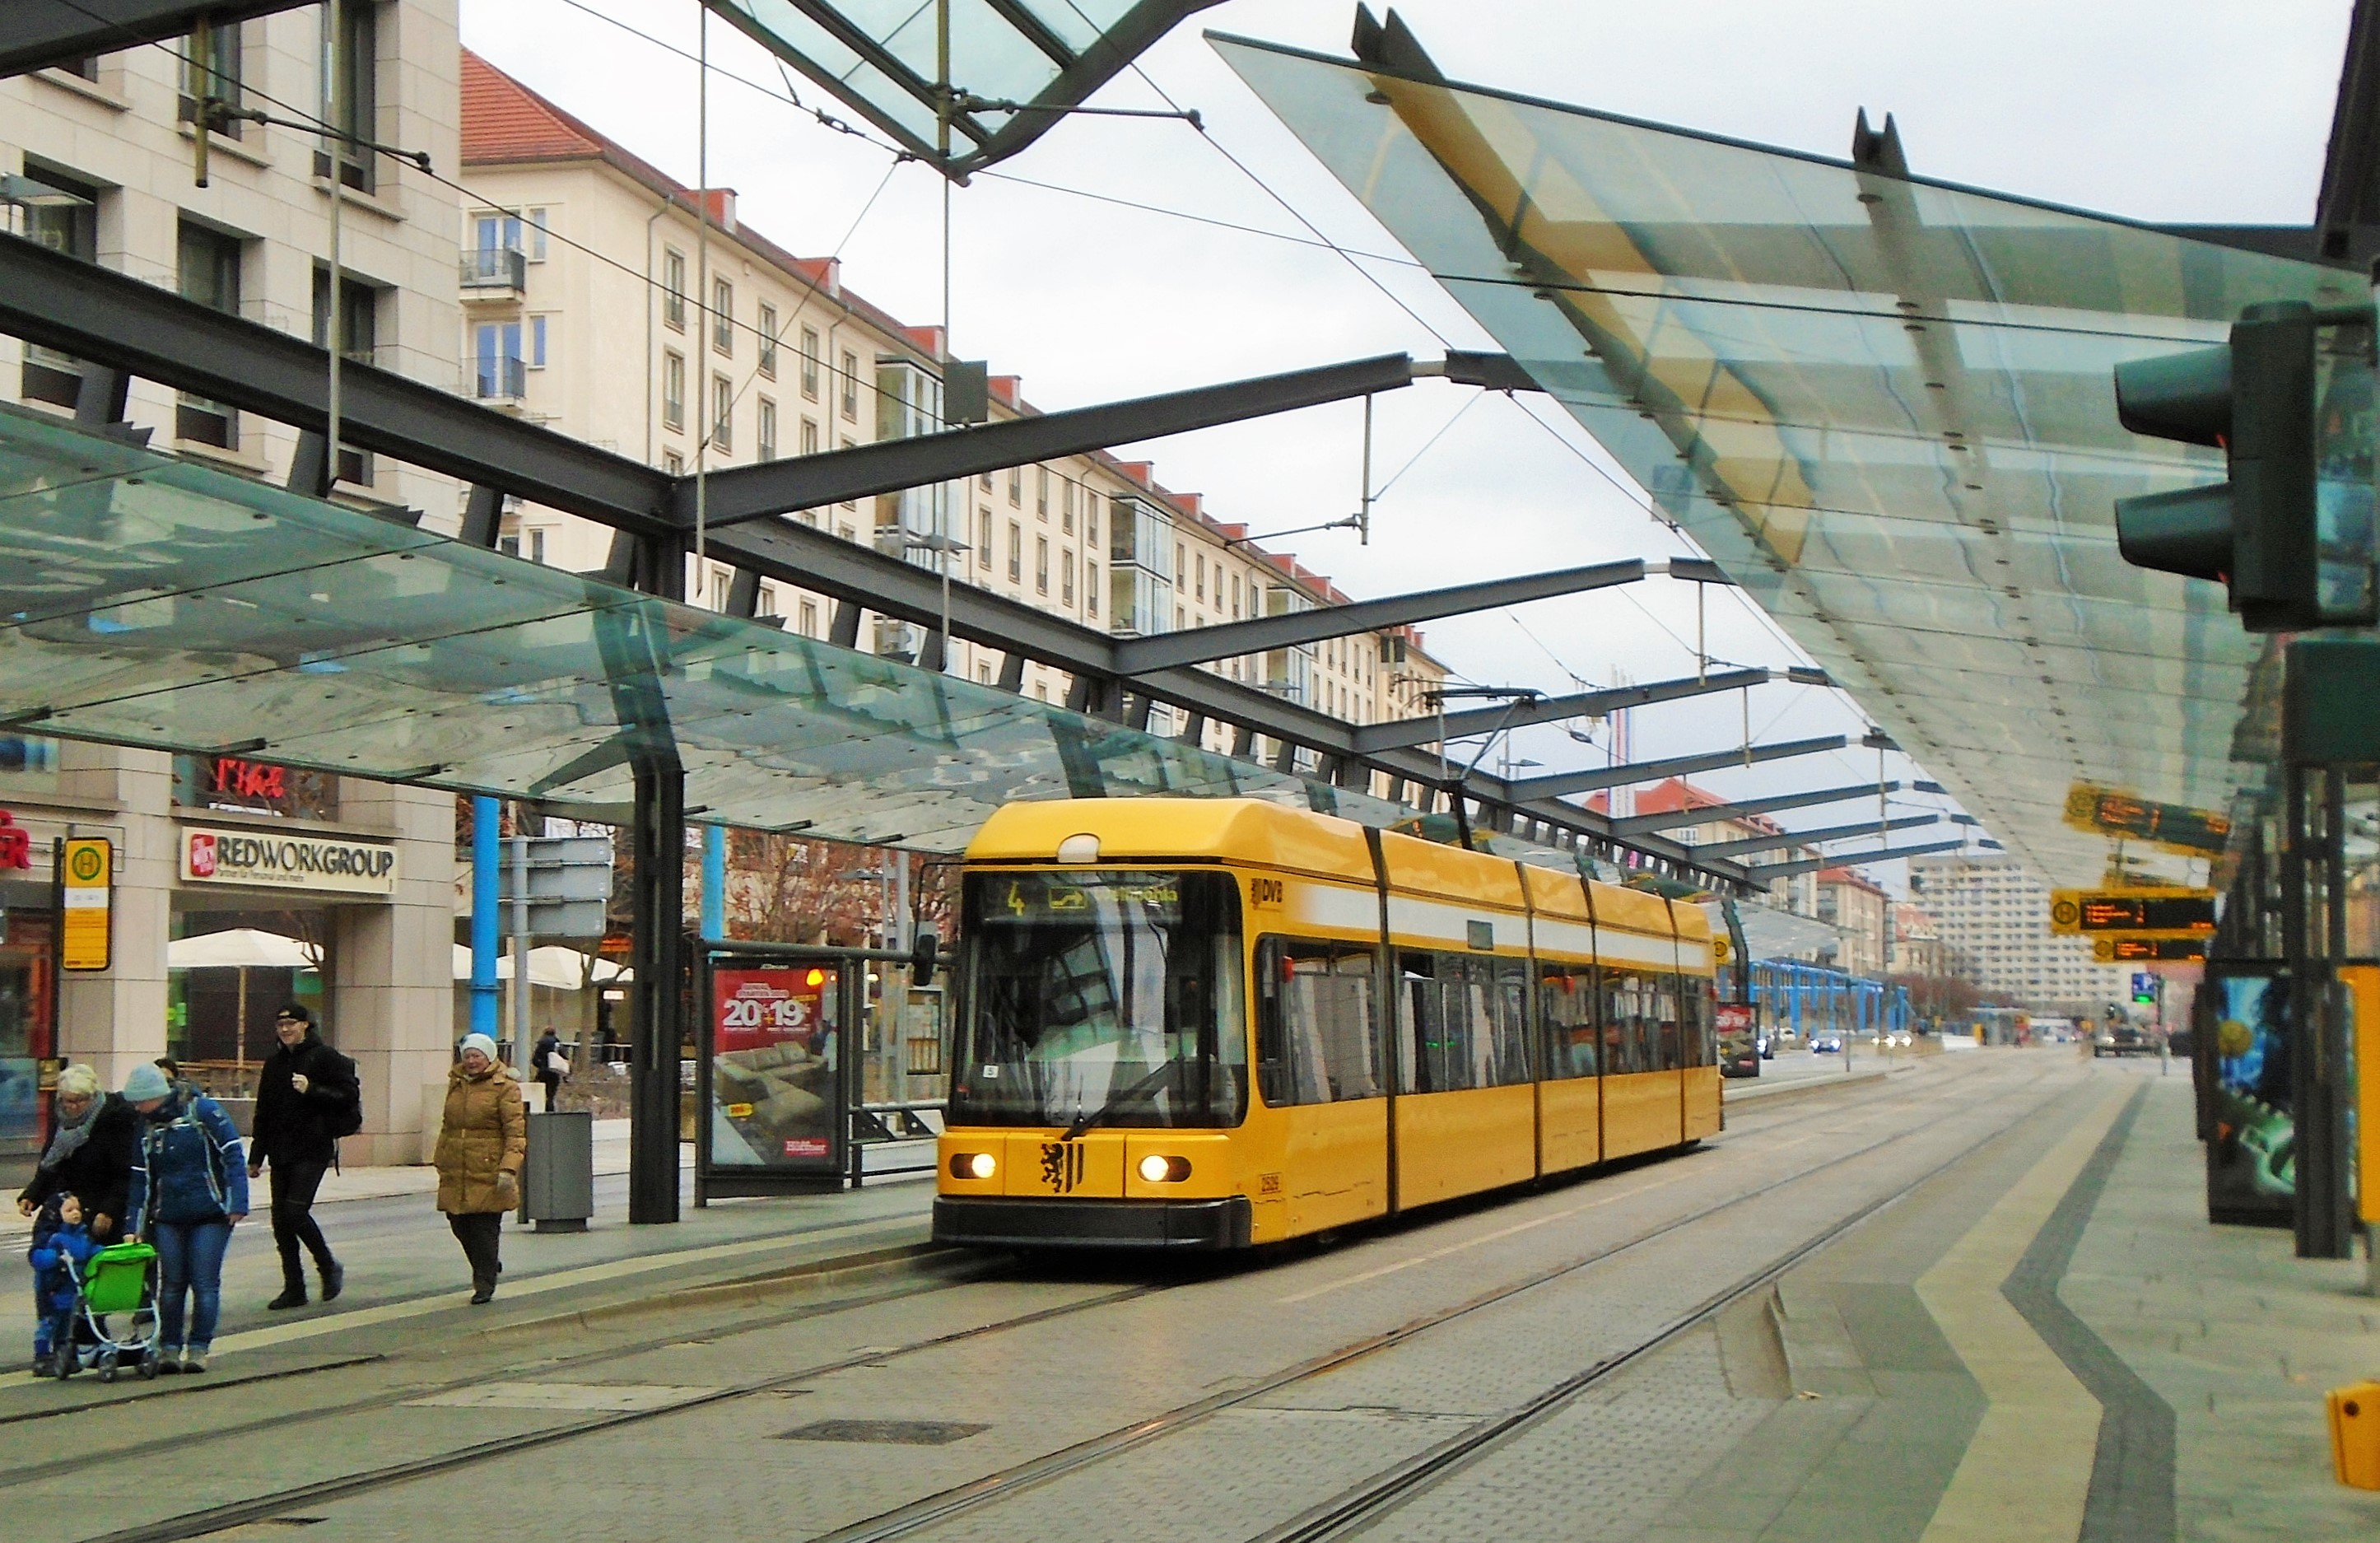 2529 přijíždí na lince 4 do důležitého přestupního uzlu v centru Drážďan Postplatz